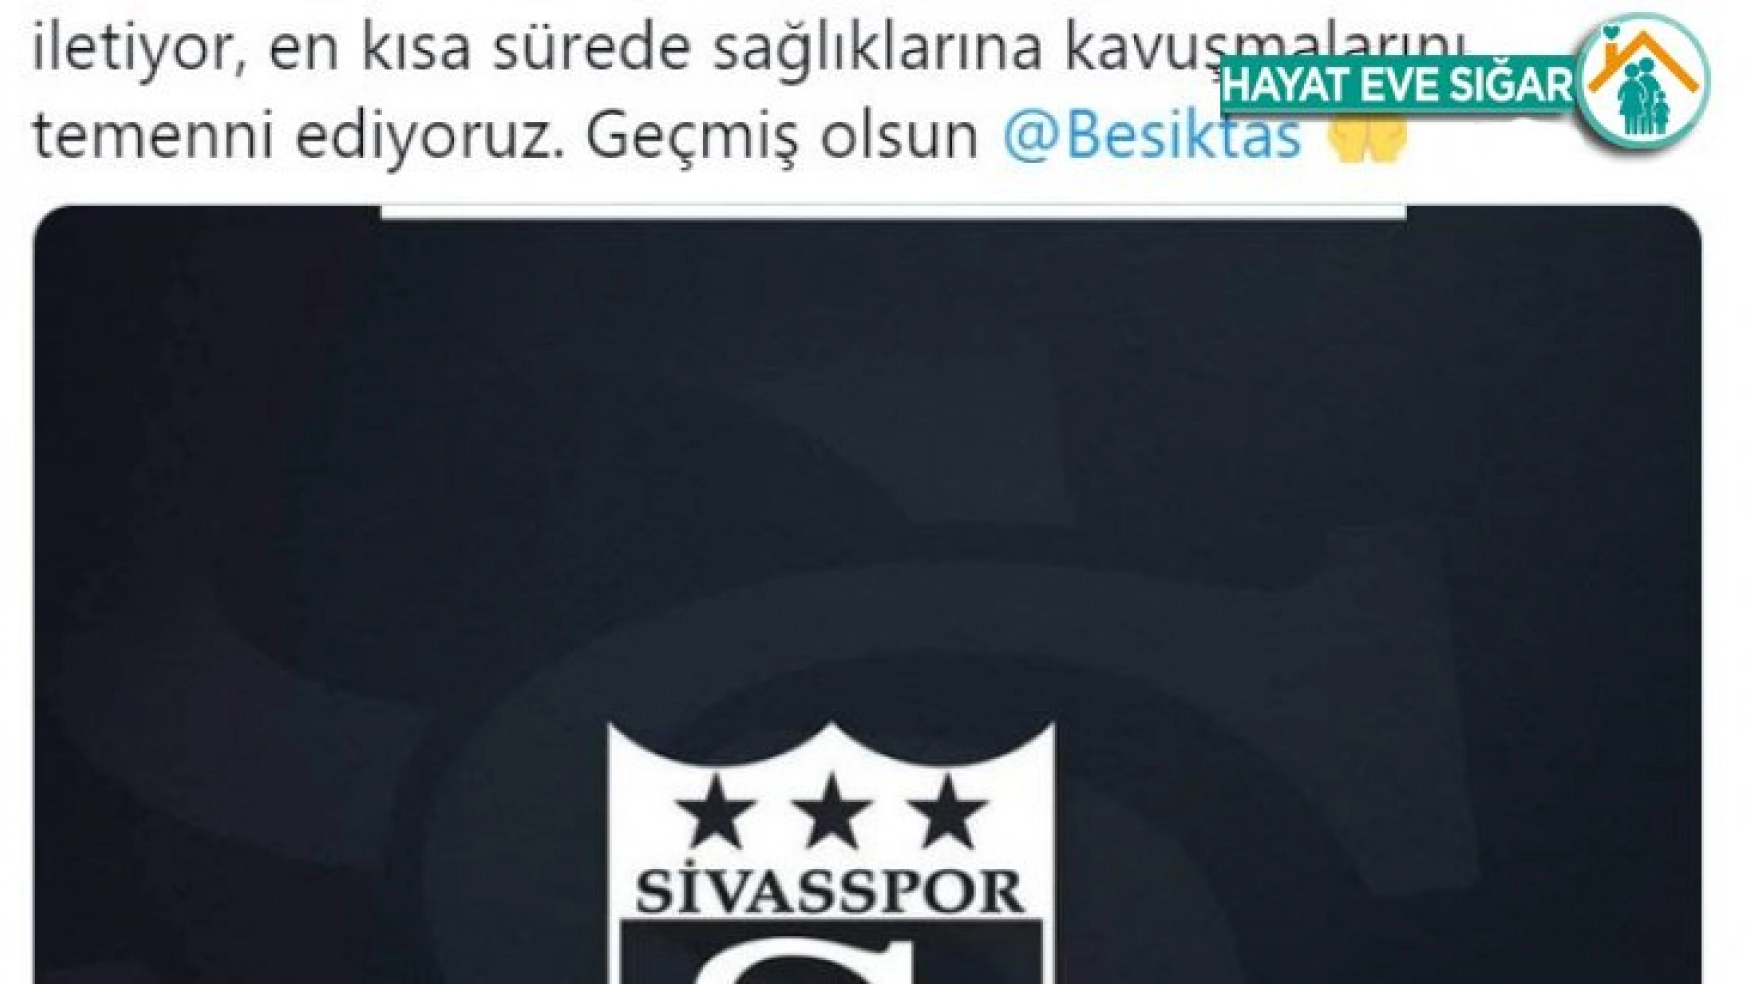 Sivasspor'dan Beşiktaş'a geçmiş olsun mesajı